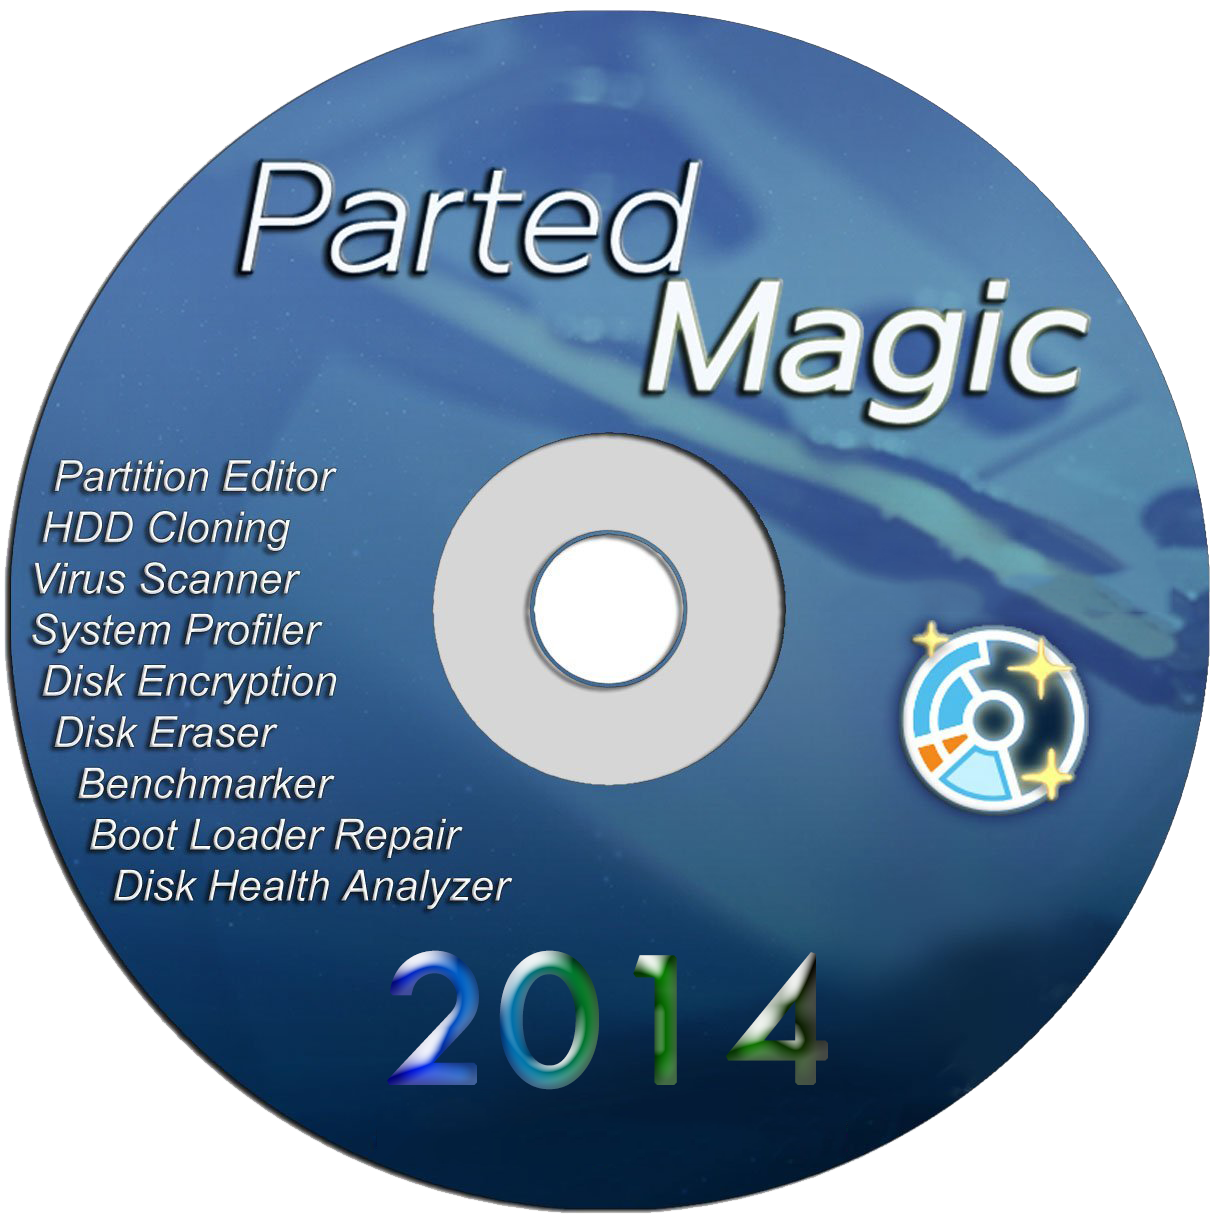 اسطوانة الصيانة  Parted Magic 2014.06.10 لتقسيم الهارد واصلاح مشاكله اخر اصدار